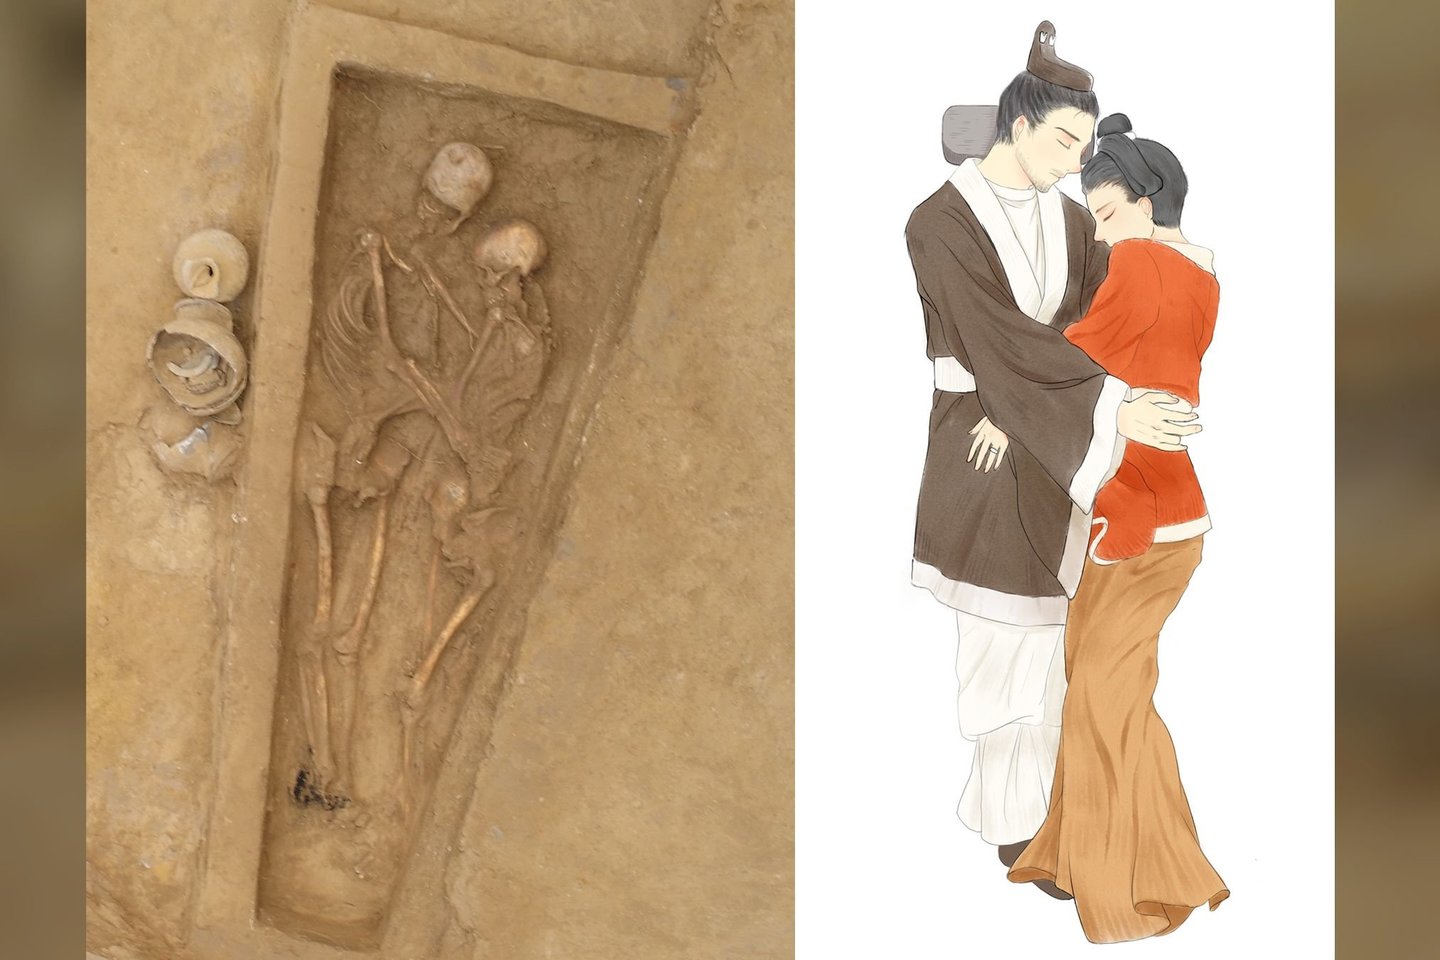  Maždaug prieš 1500 metų pora – vyras ir moteris – buvo palaidoti kartu meiliai apkabinę.<br> Qian Wang nuotr. / Anqi Wang pieš.